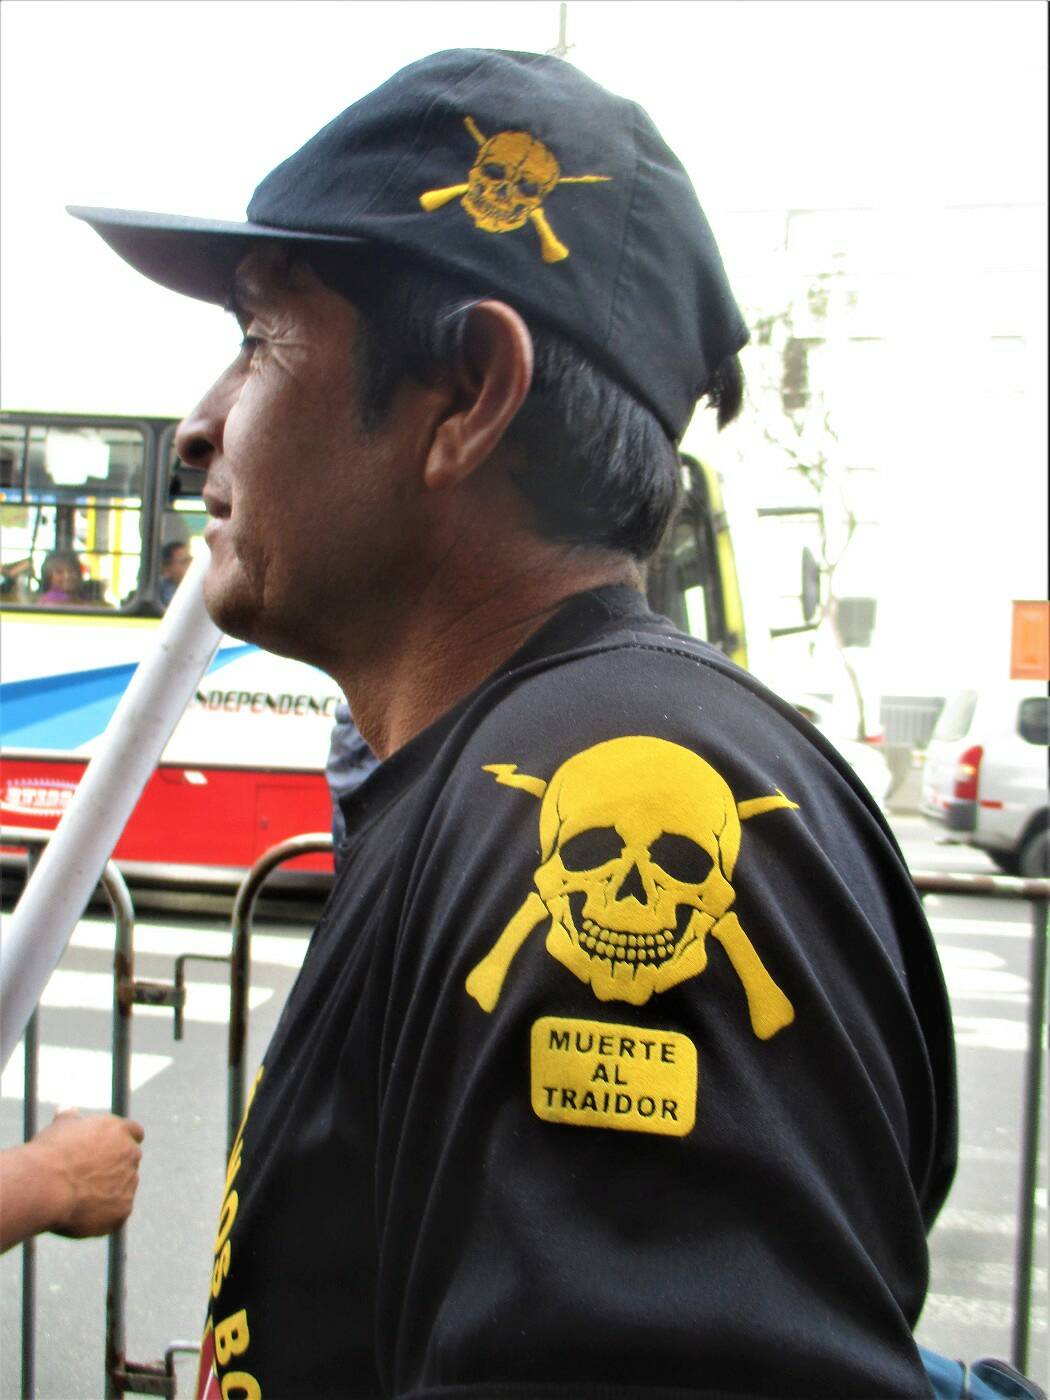 Fig. 2 : Inscription sur le vêtement d'un ancien combattant qui a participé à la journée de protestation et sur laquelle on peut lire : "Mort au traître". Cliché: C. Granados (Lima, septembre 2019).